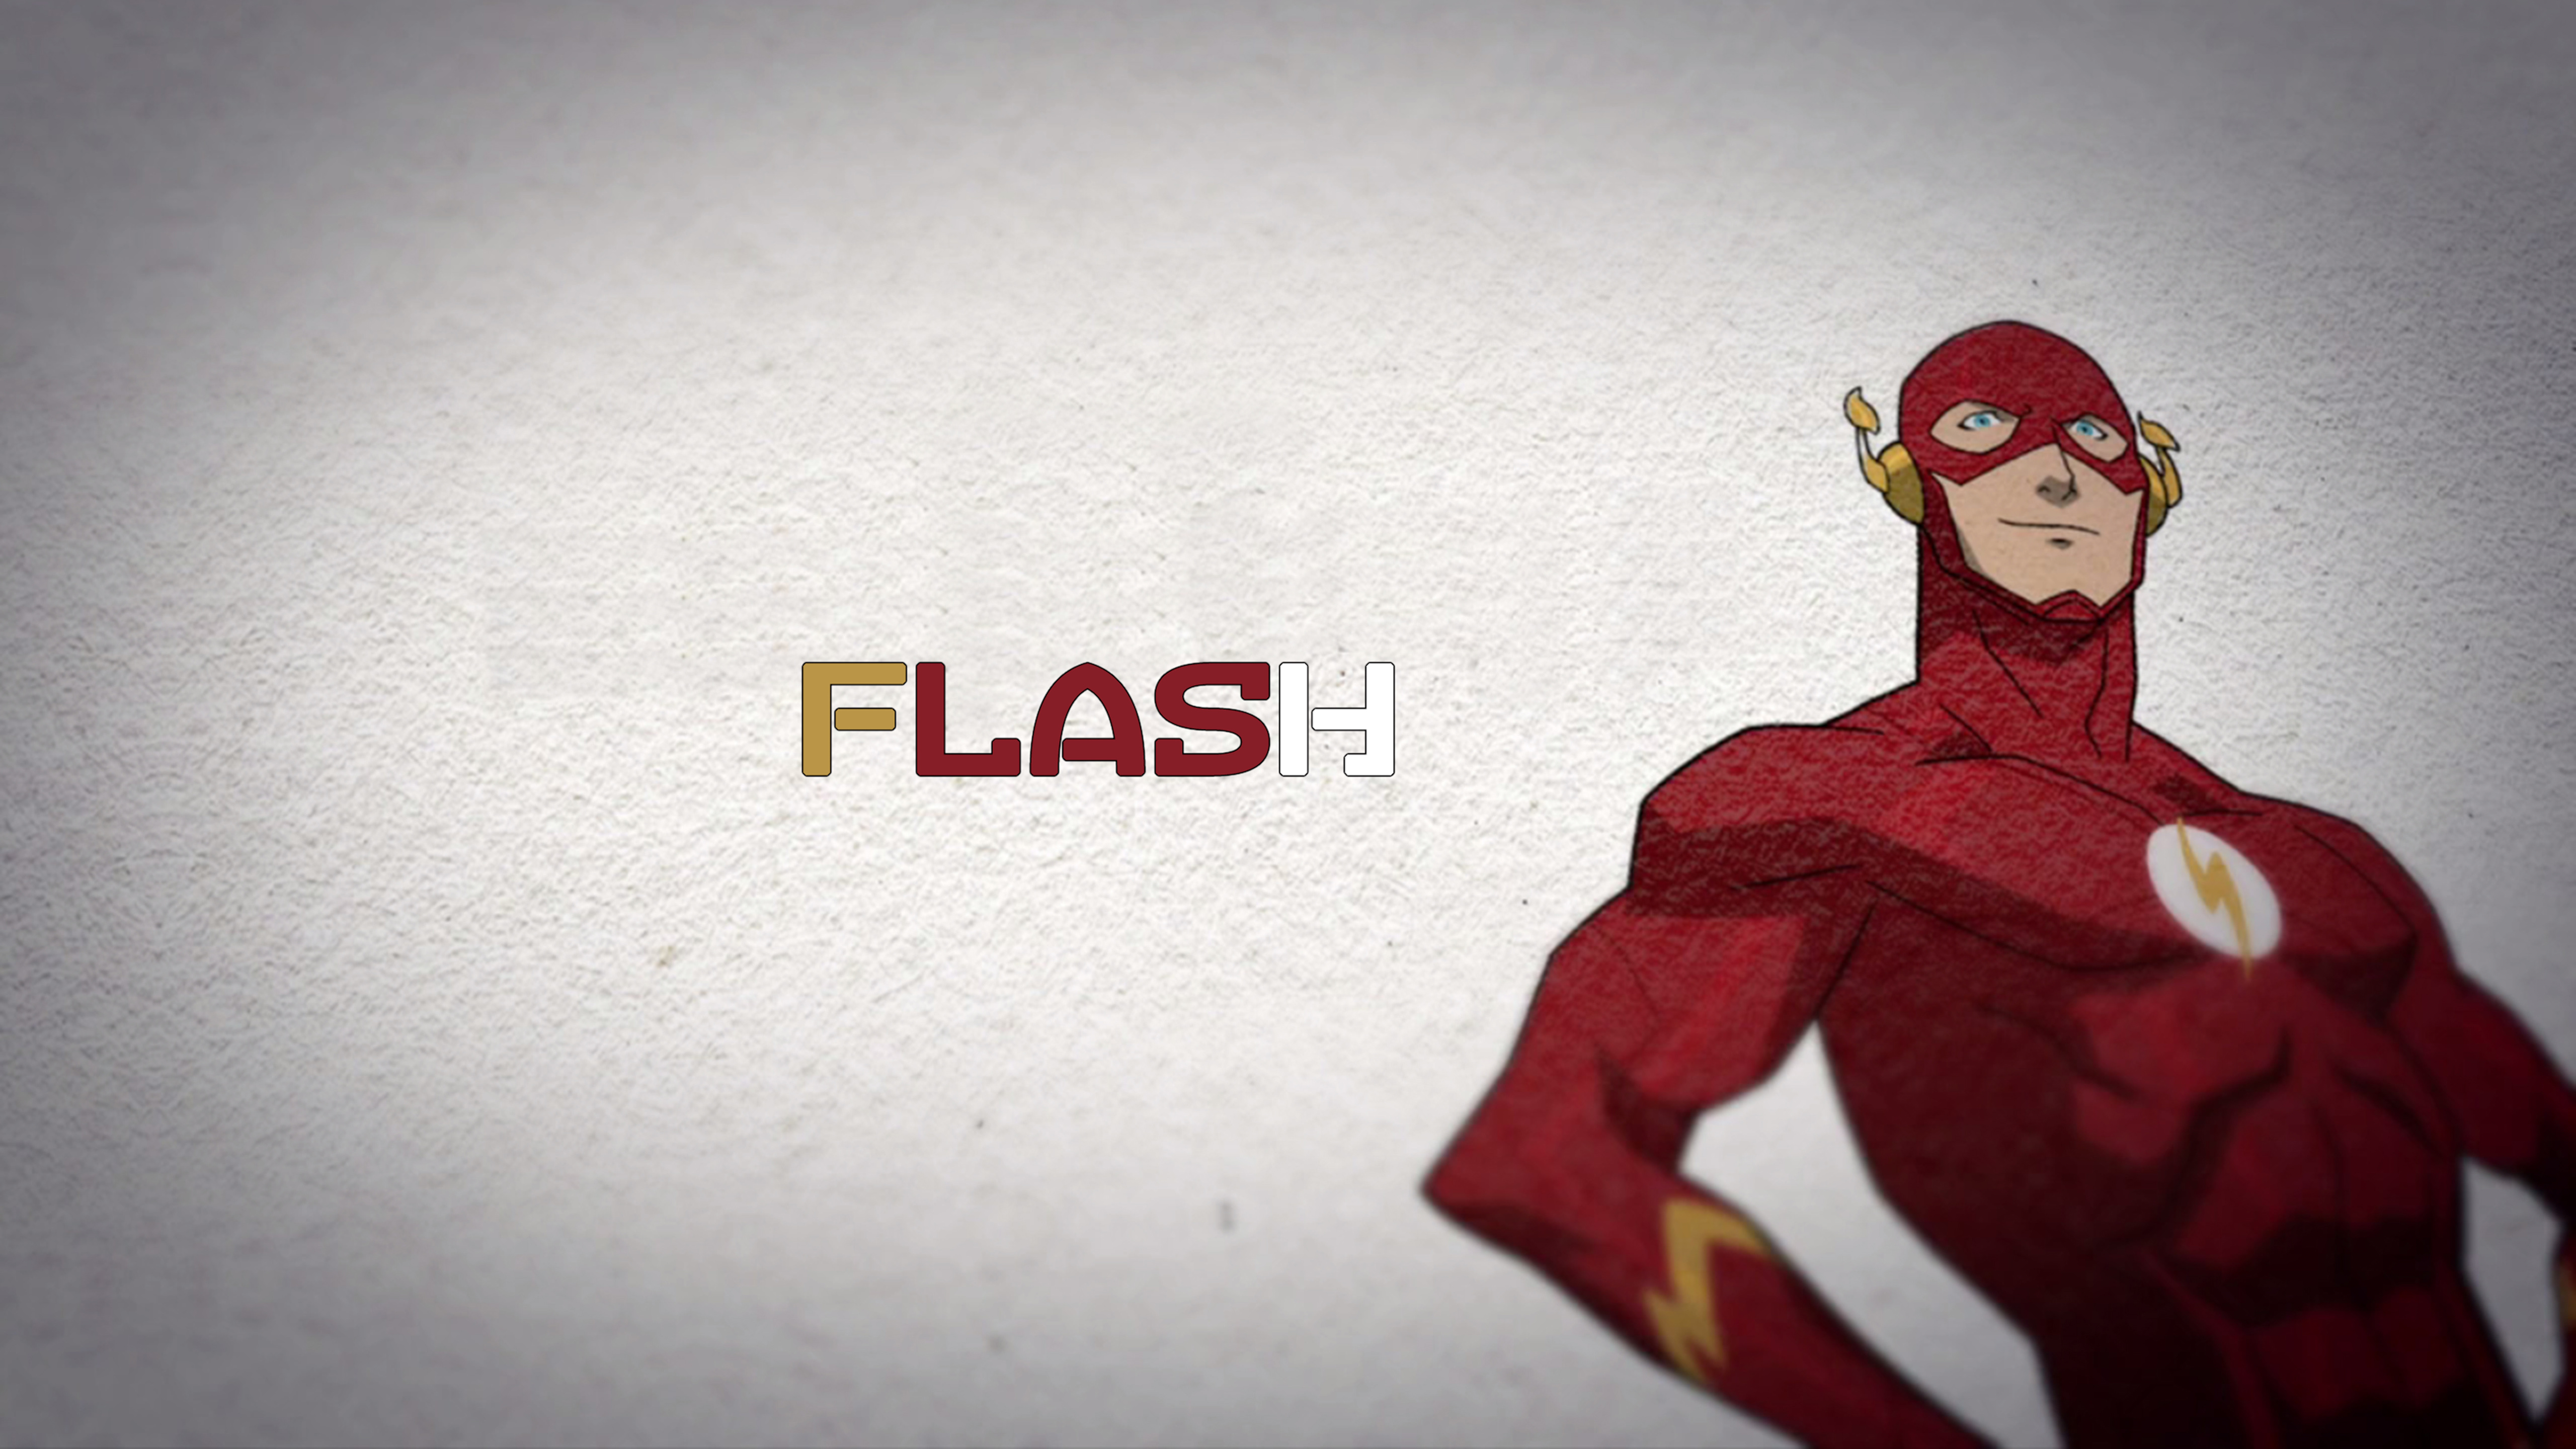 The Flash Dc Comics Superhero 5k Wallpaper Dc Comics HD